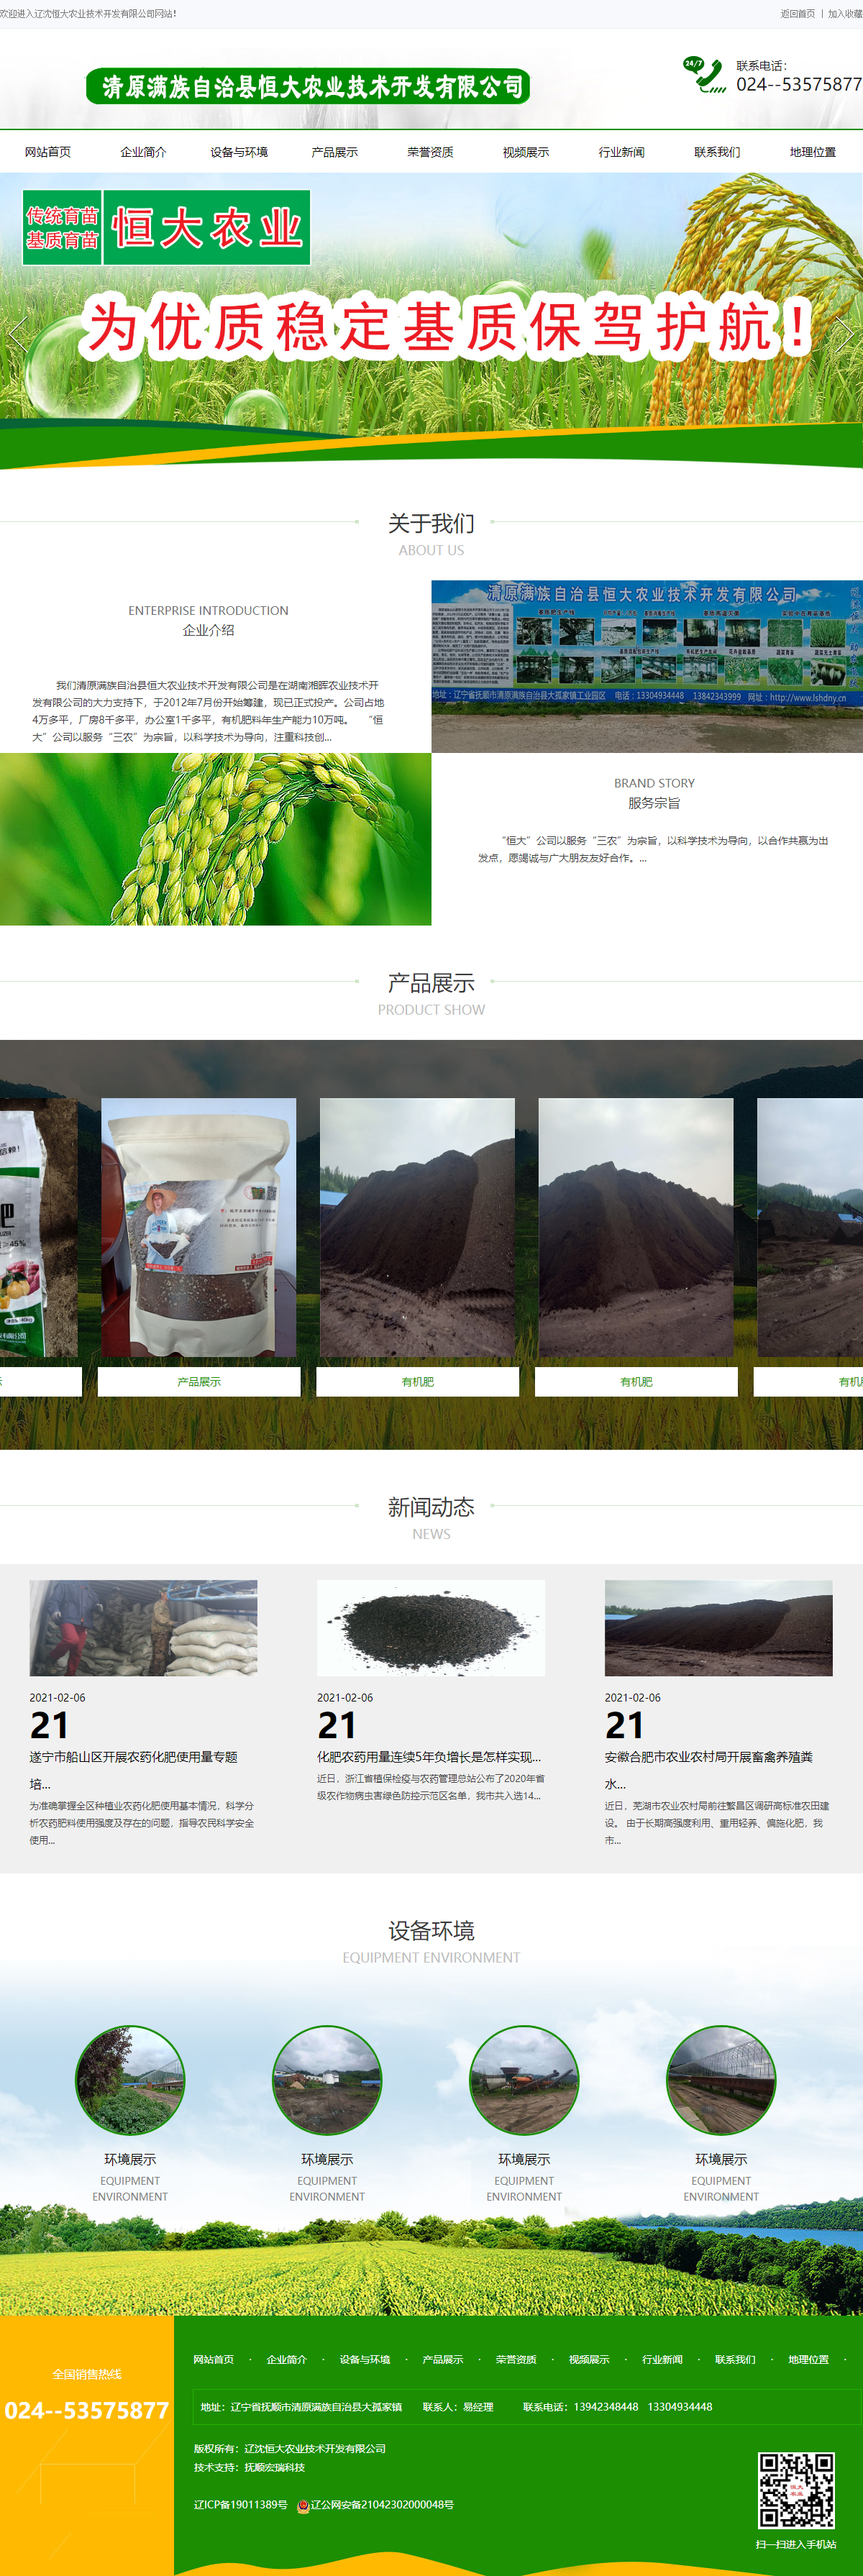 清原满族自治县恒大农业技术开发有限公司网站案例